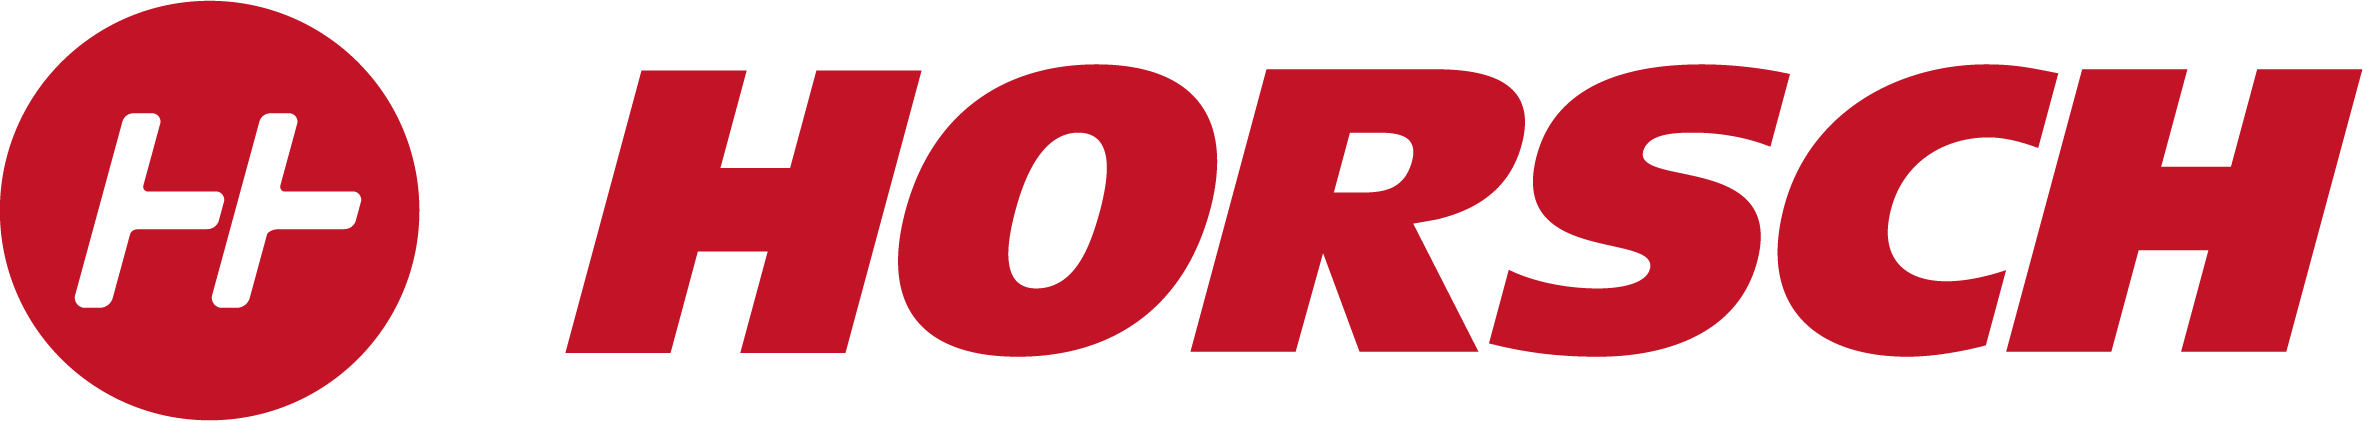 Logo_HORSCH_flat_red